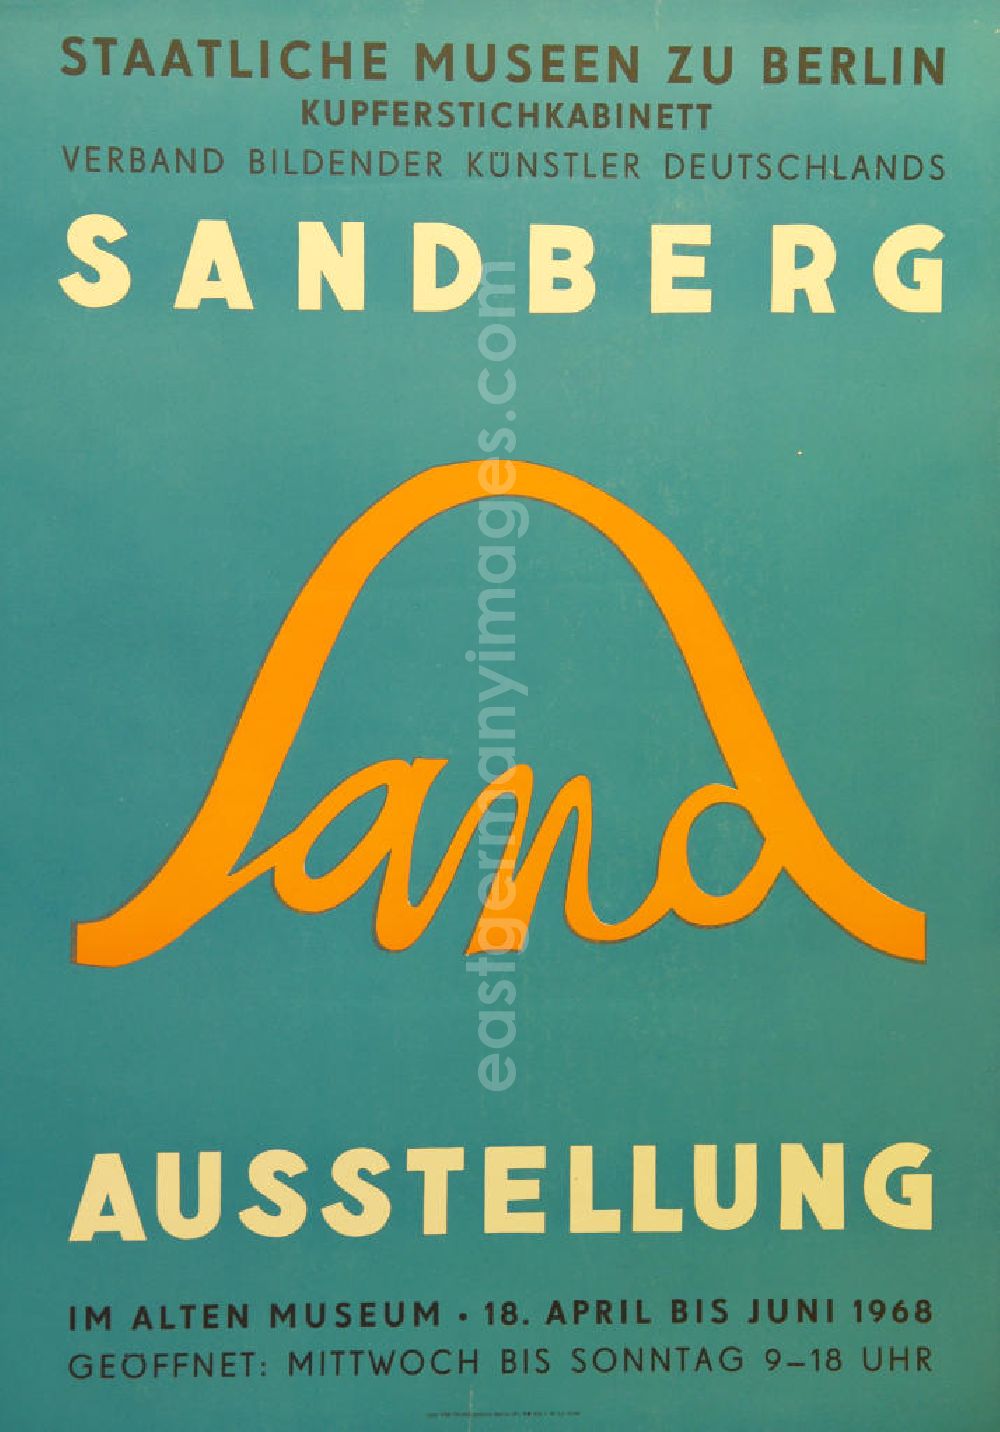 GDR image archive: Berlin - Plakat der Ausstellung Sandberg über Herbert Sandberg vom 18.04.-18.